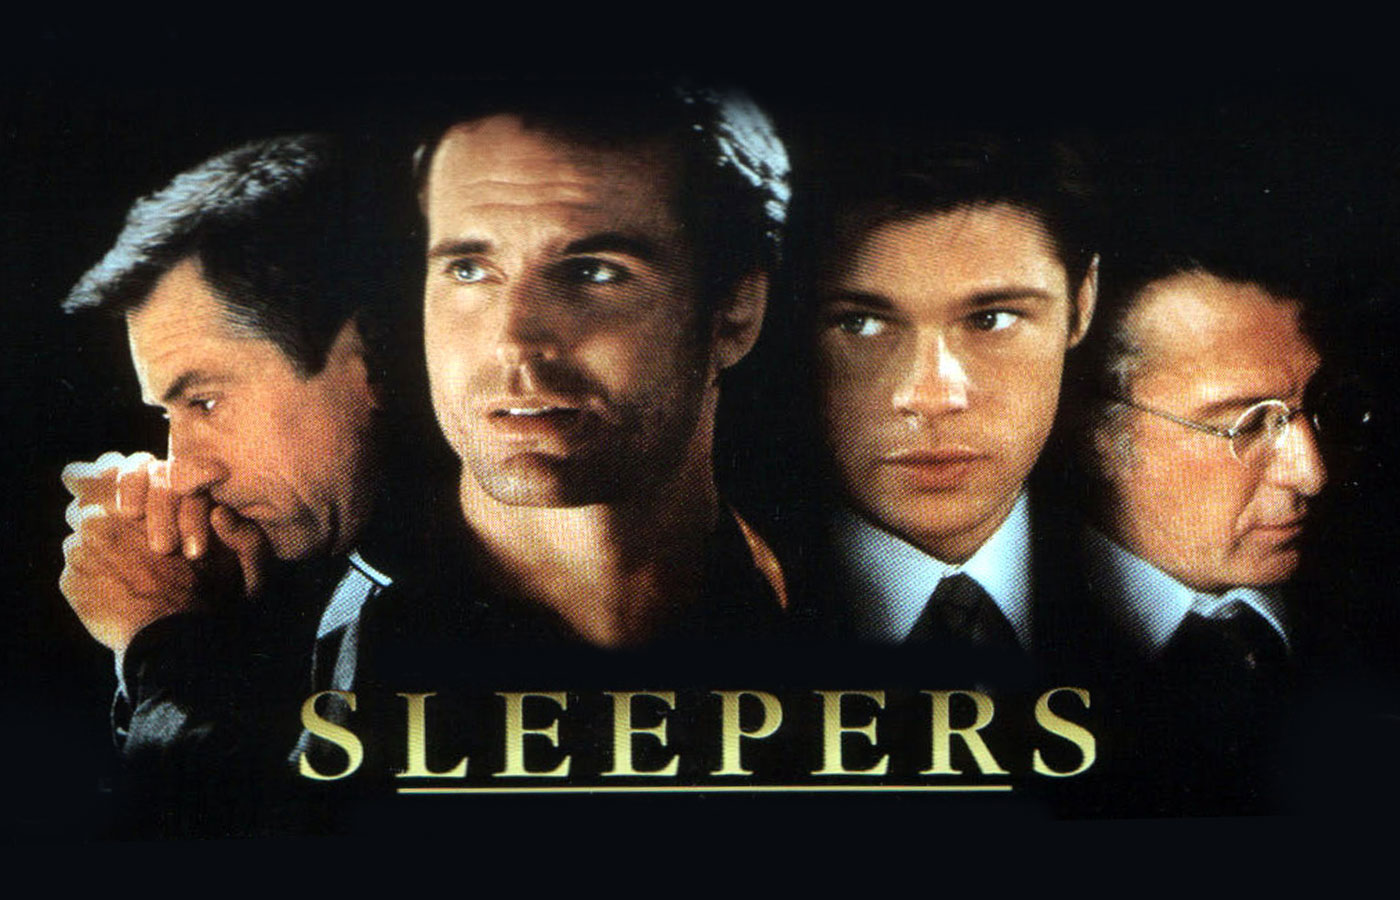 Sleeping movie. Sleepers.(1996) Постер. Sleepers 1996 poster Art.